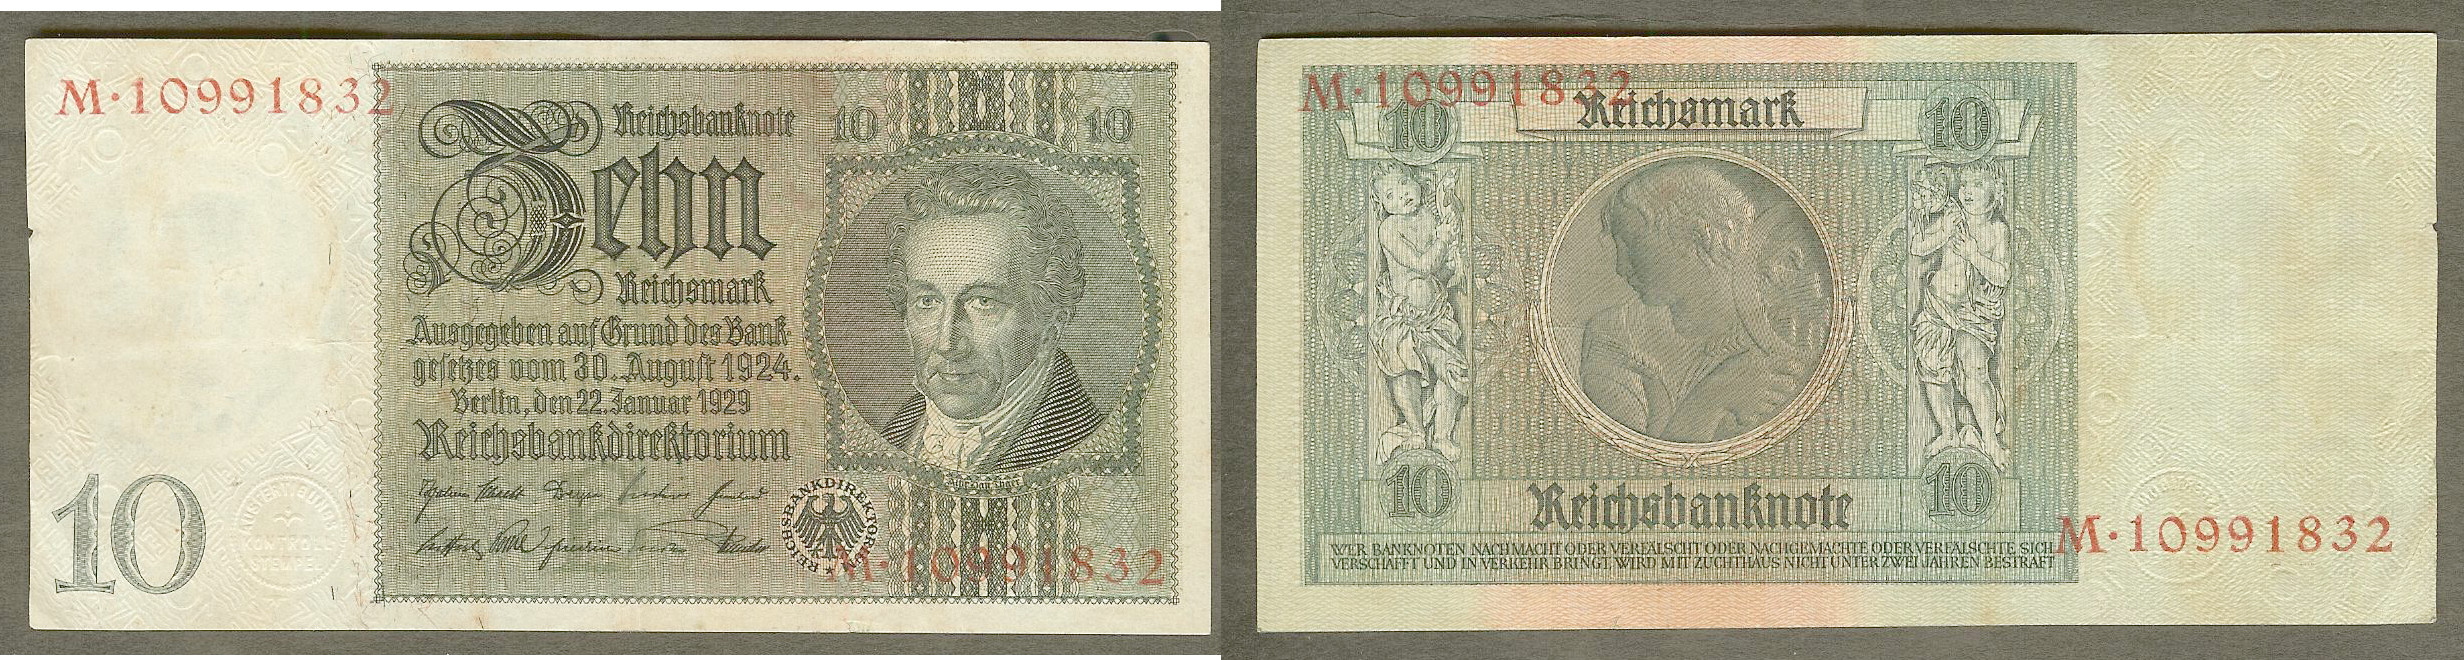 Germany 10 reichsmark 22.1.1929 EF